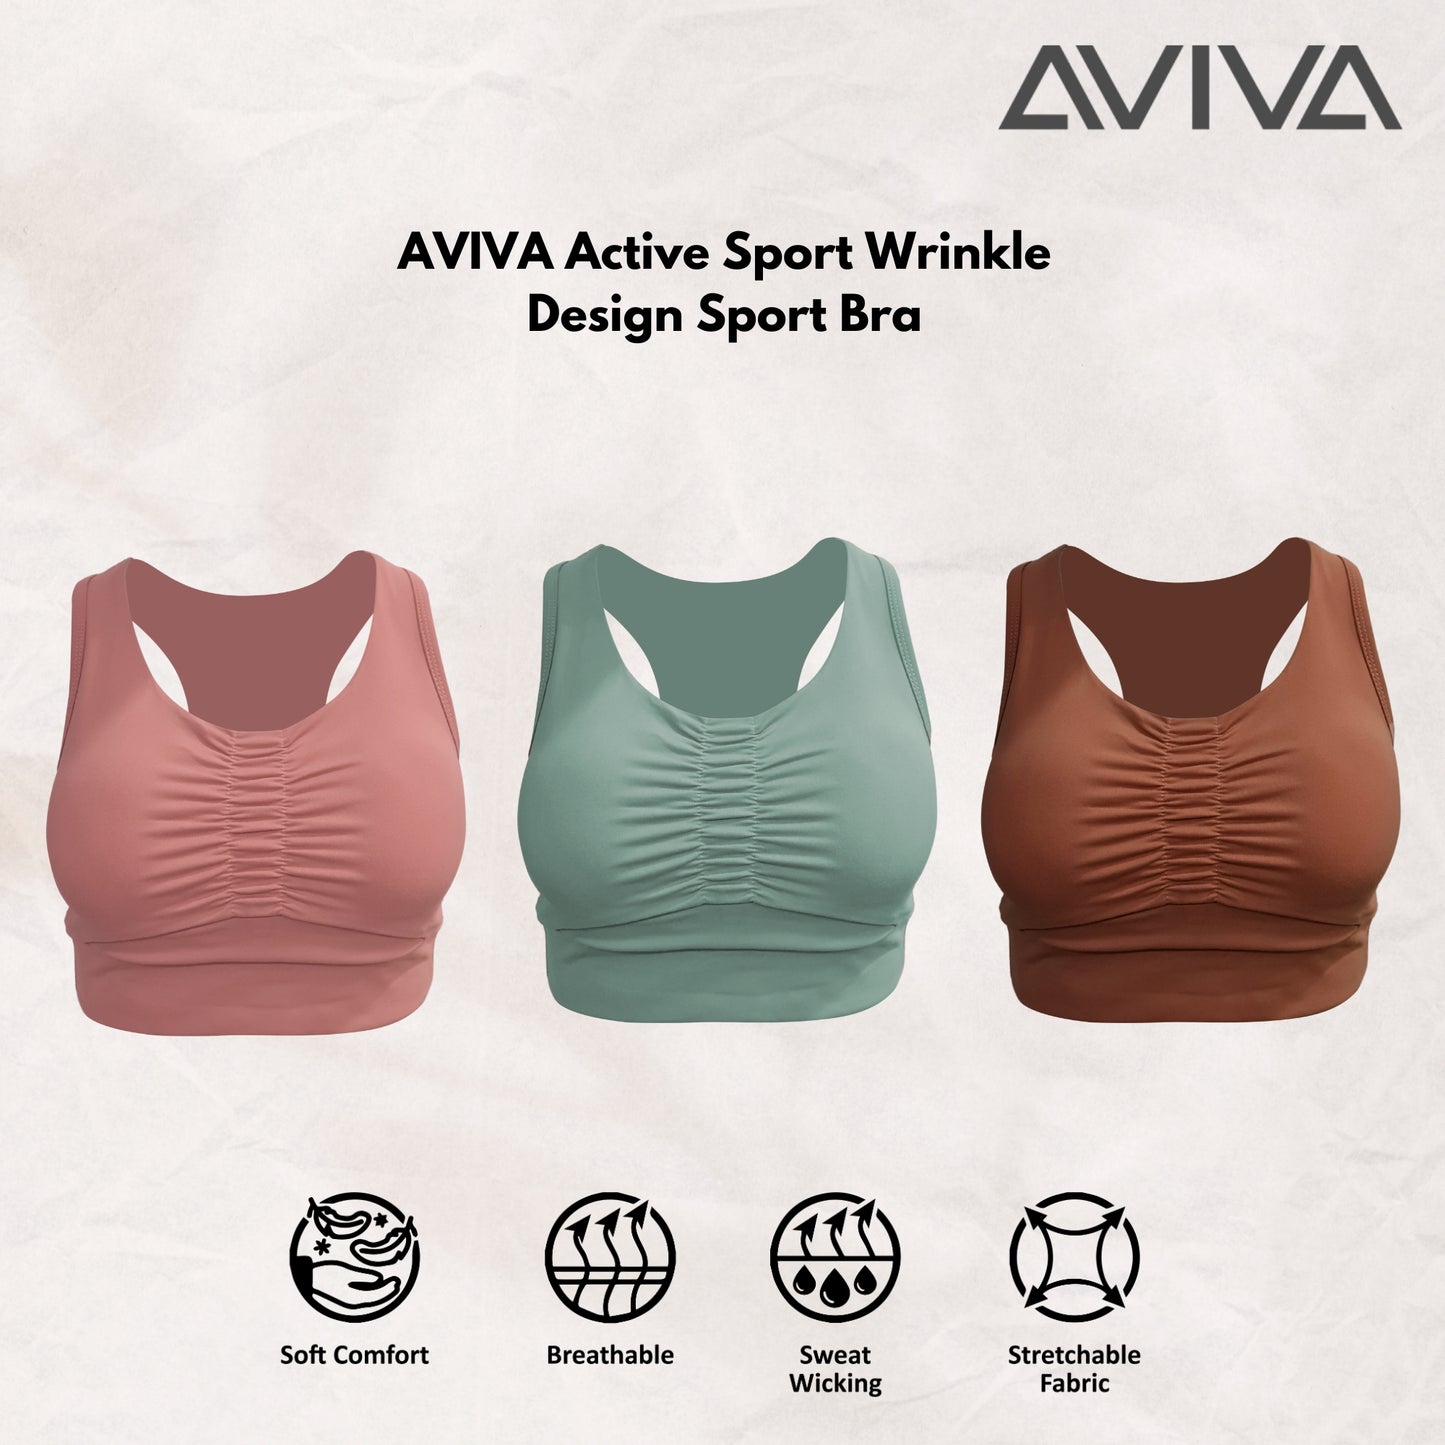 AVIVA Active Sport Wrinkle Design Sport Bra (81-6121)